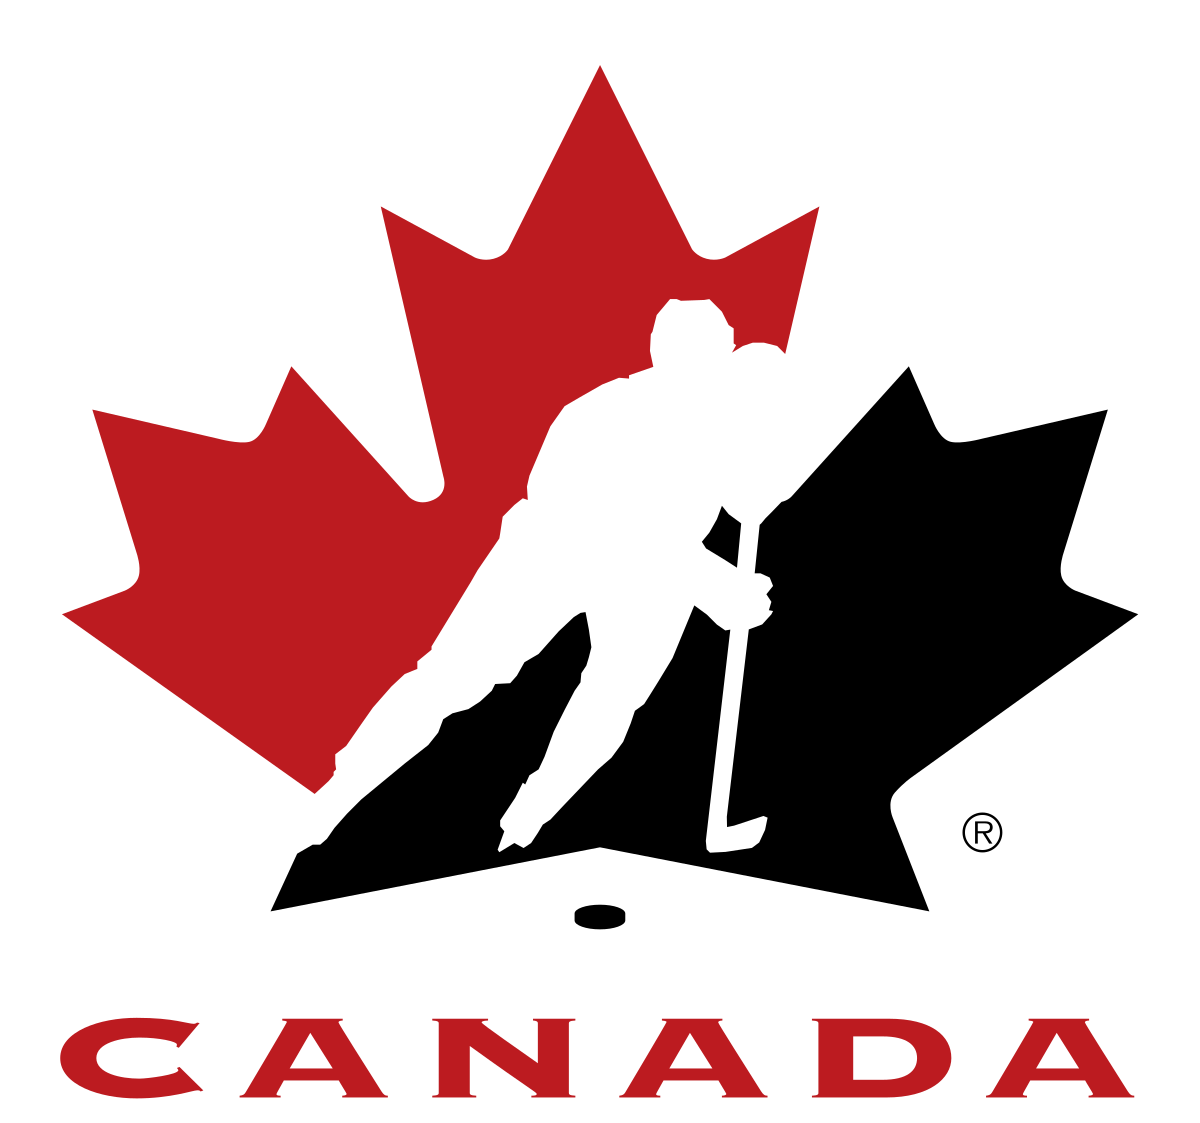 Hockey canada logo